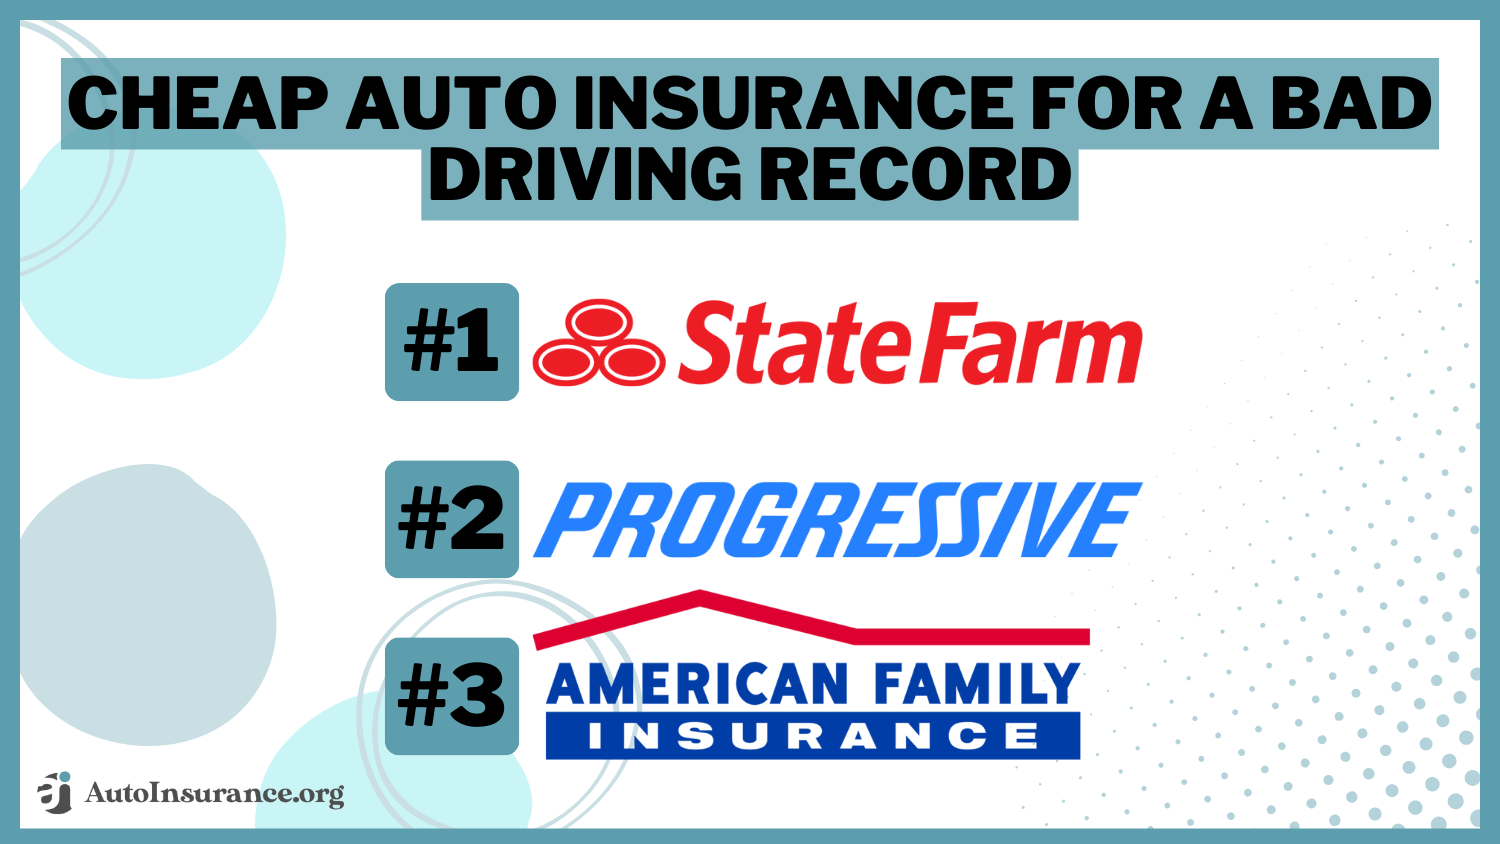 Cheap Auto Insurance For a Bad Driving Record: State Farm, Progressive, American Family